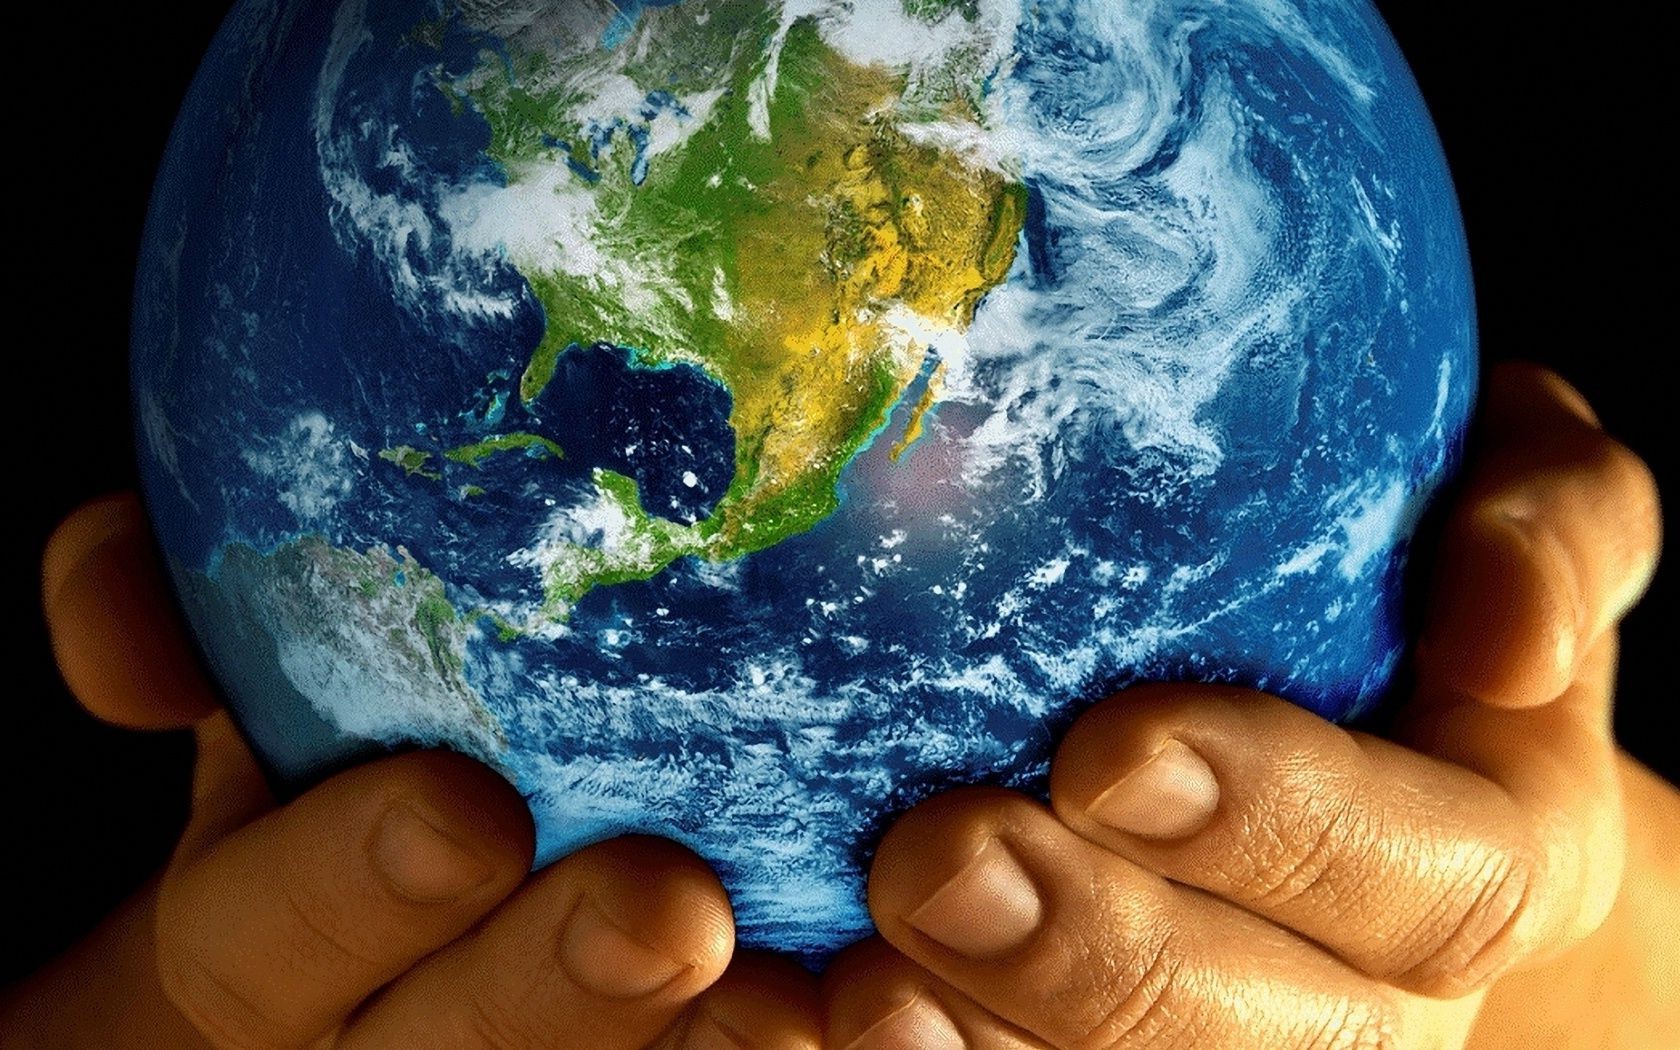 виды земли из космоса шарообразные планеты сферически вселенная карте континент география сфера среды атмосфера загрязнения экология астрономия окружающей среды наука